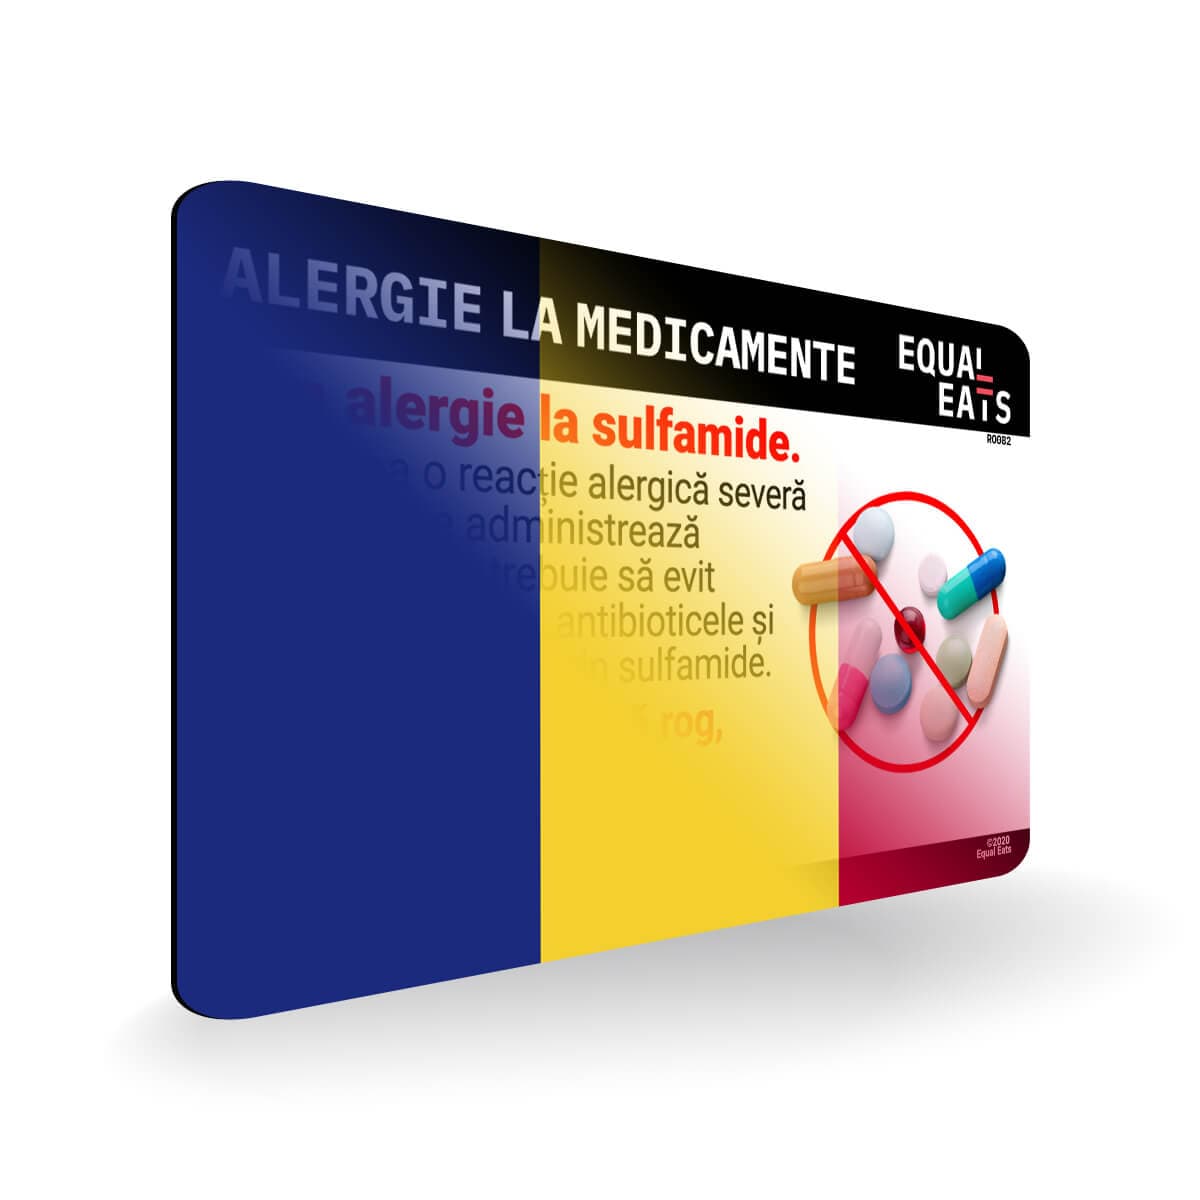 Sulfa Allergy in Romanian. Sulfa Medicine Allergy Card for Romania